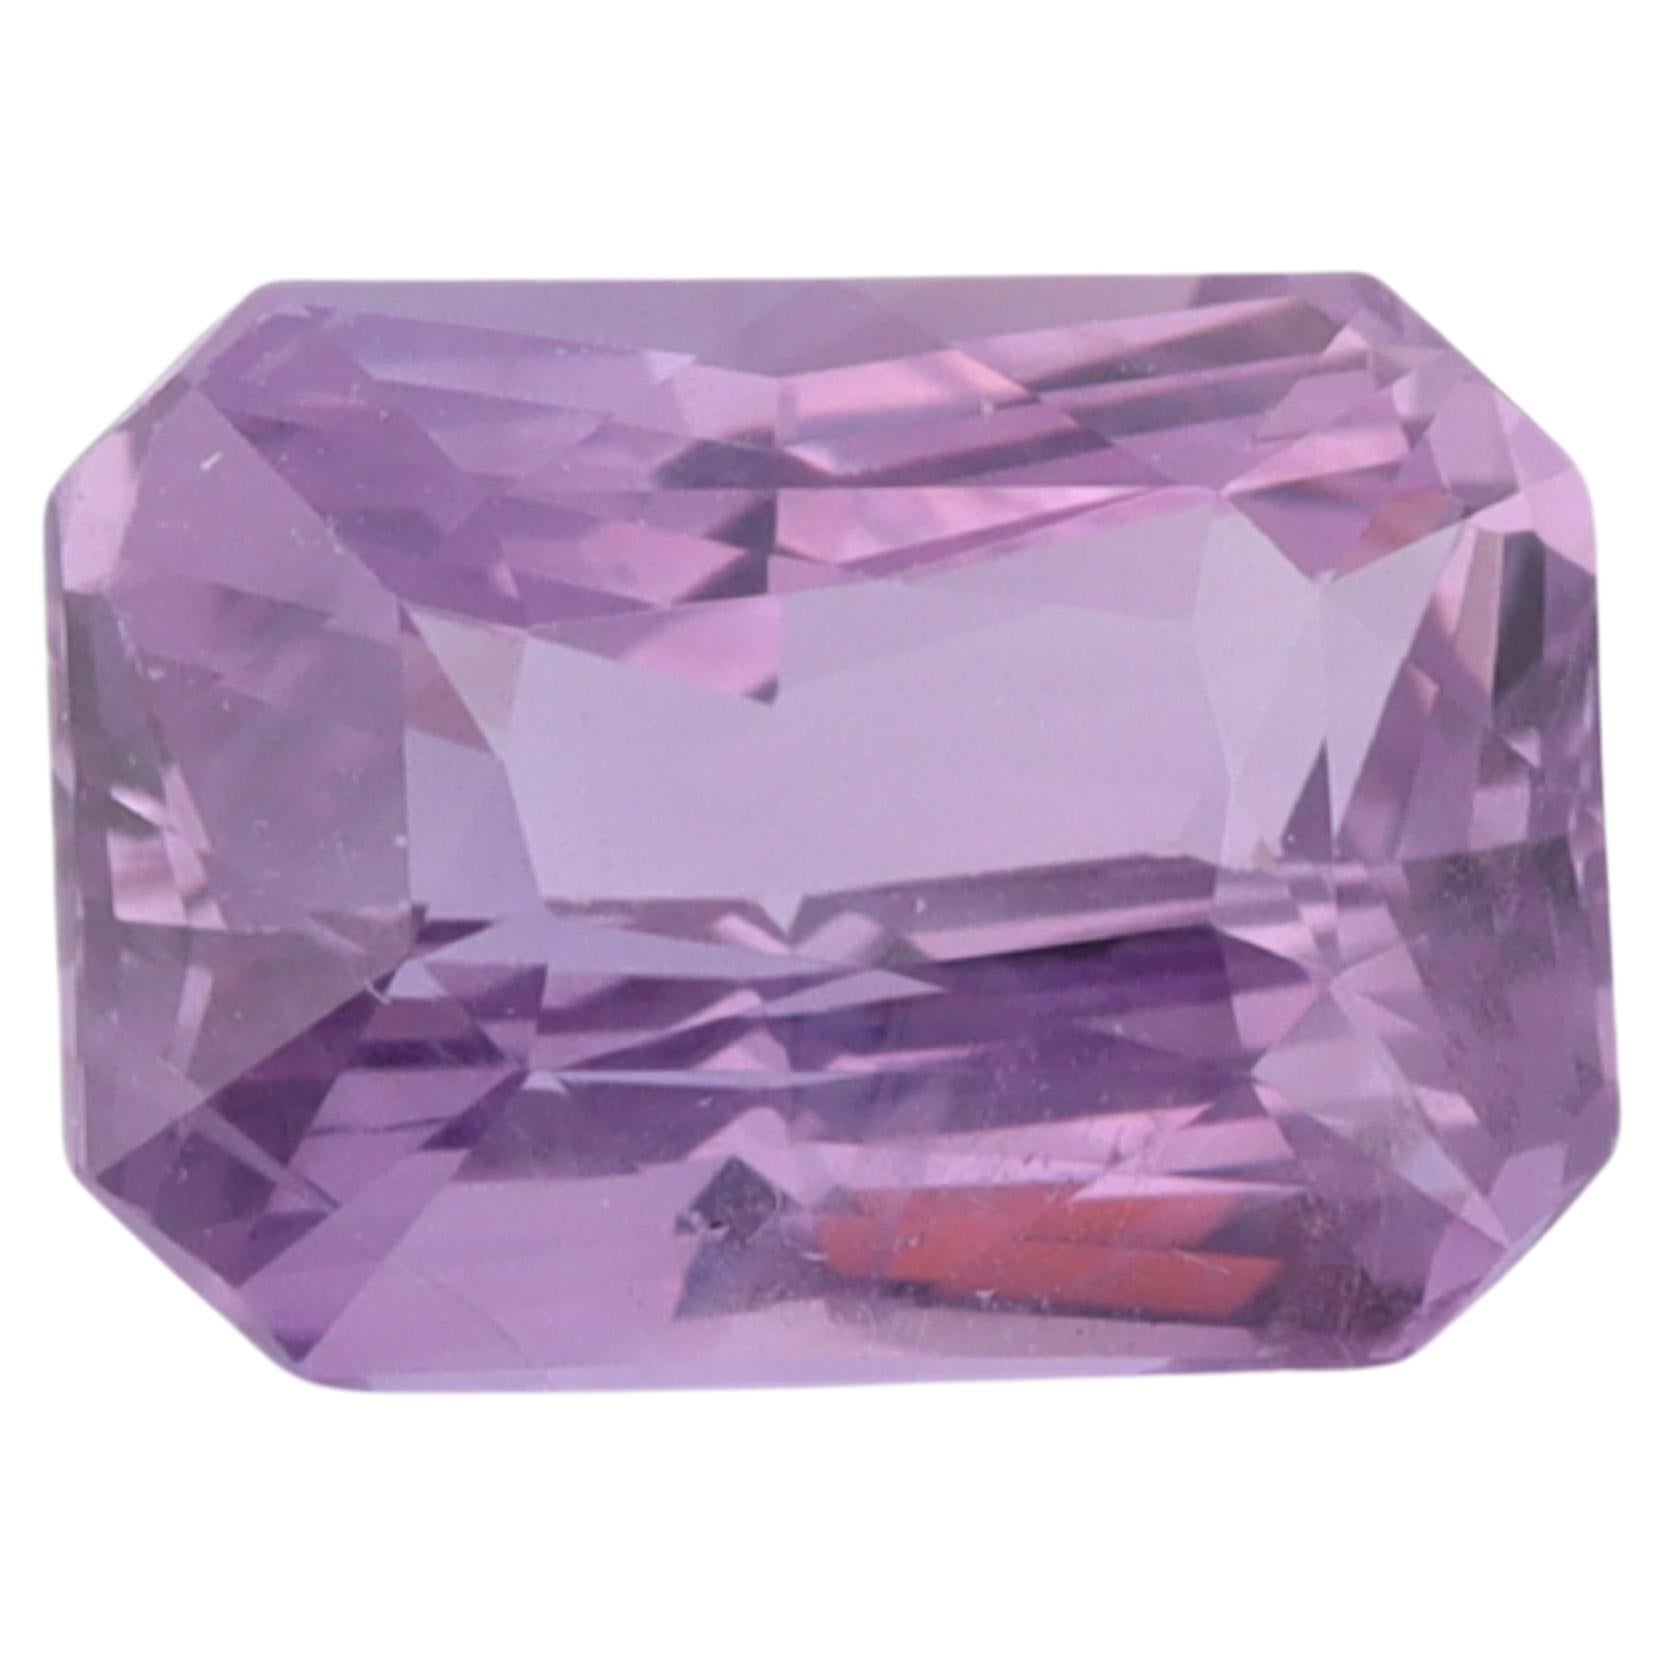 Schöner Stein aus Sri Lanka, der keiner Behandlung unterzogen wurde und eine violette Farbe mit hervorragender Sättigung und Farbton aufweist.  Es wurde in eine achteckige Form geschnitten, gut proportioniert, in der verlängerten Seite, mit einer